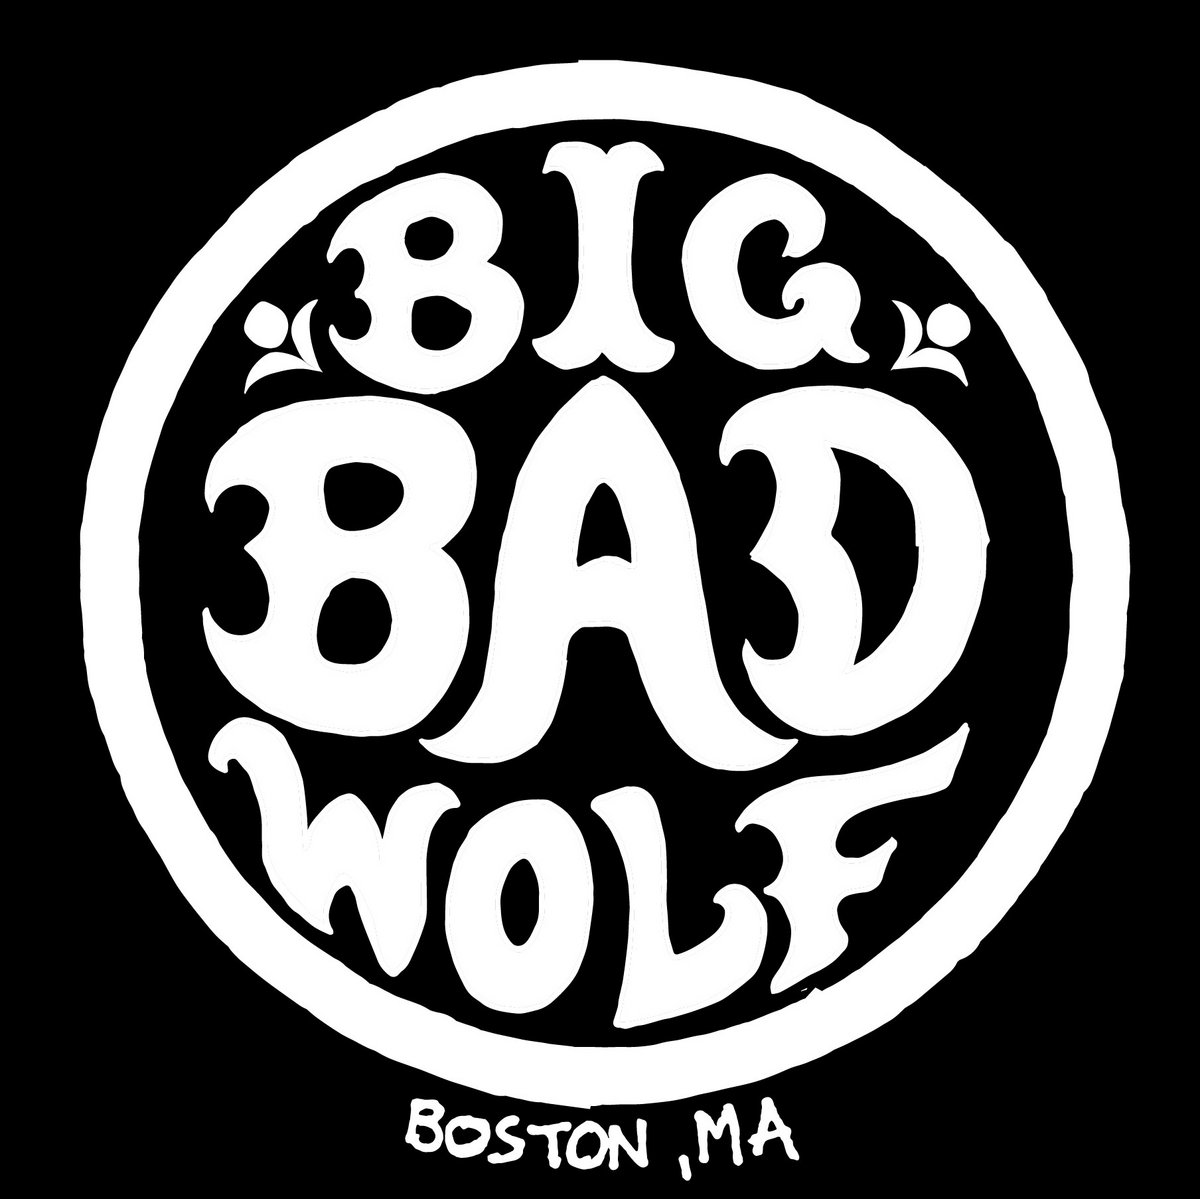 Big bad wolf mp3 скачать бесплатно